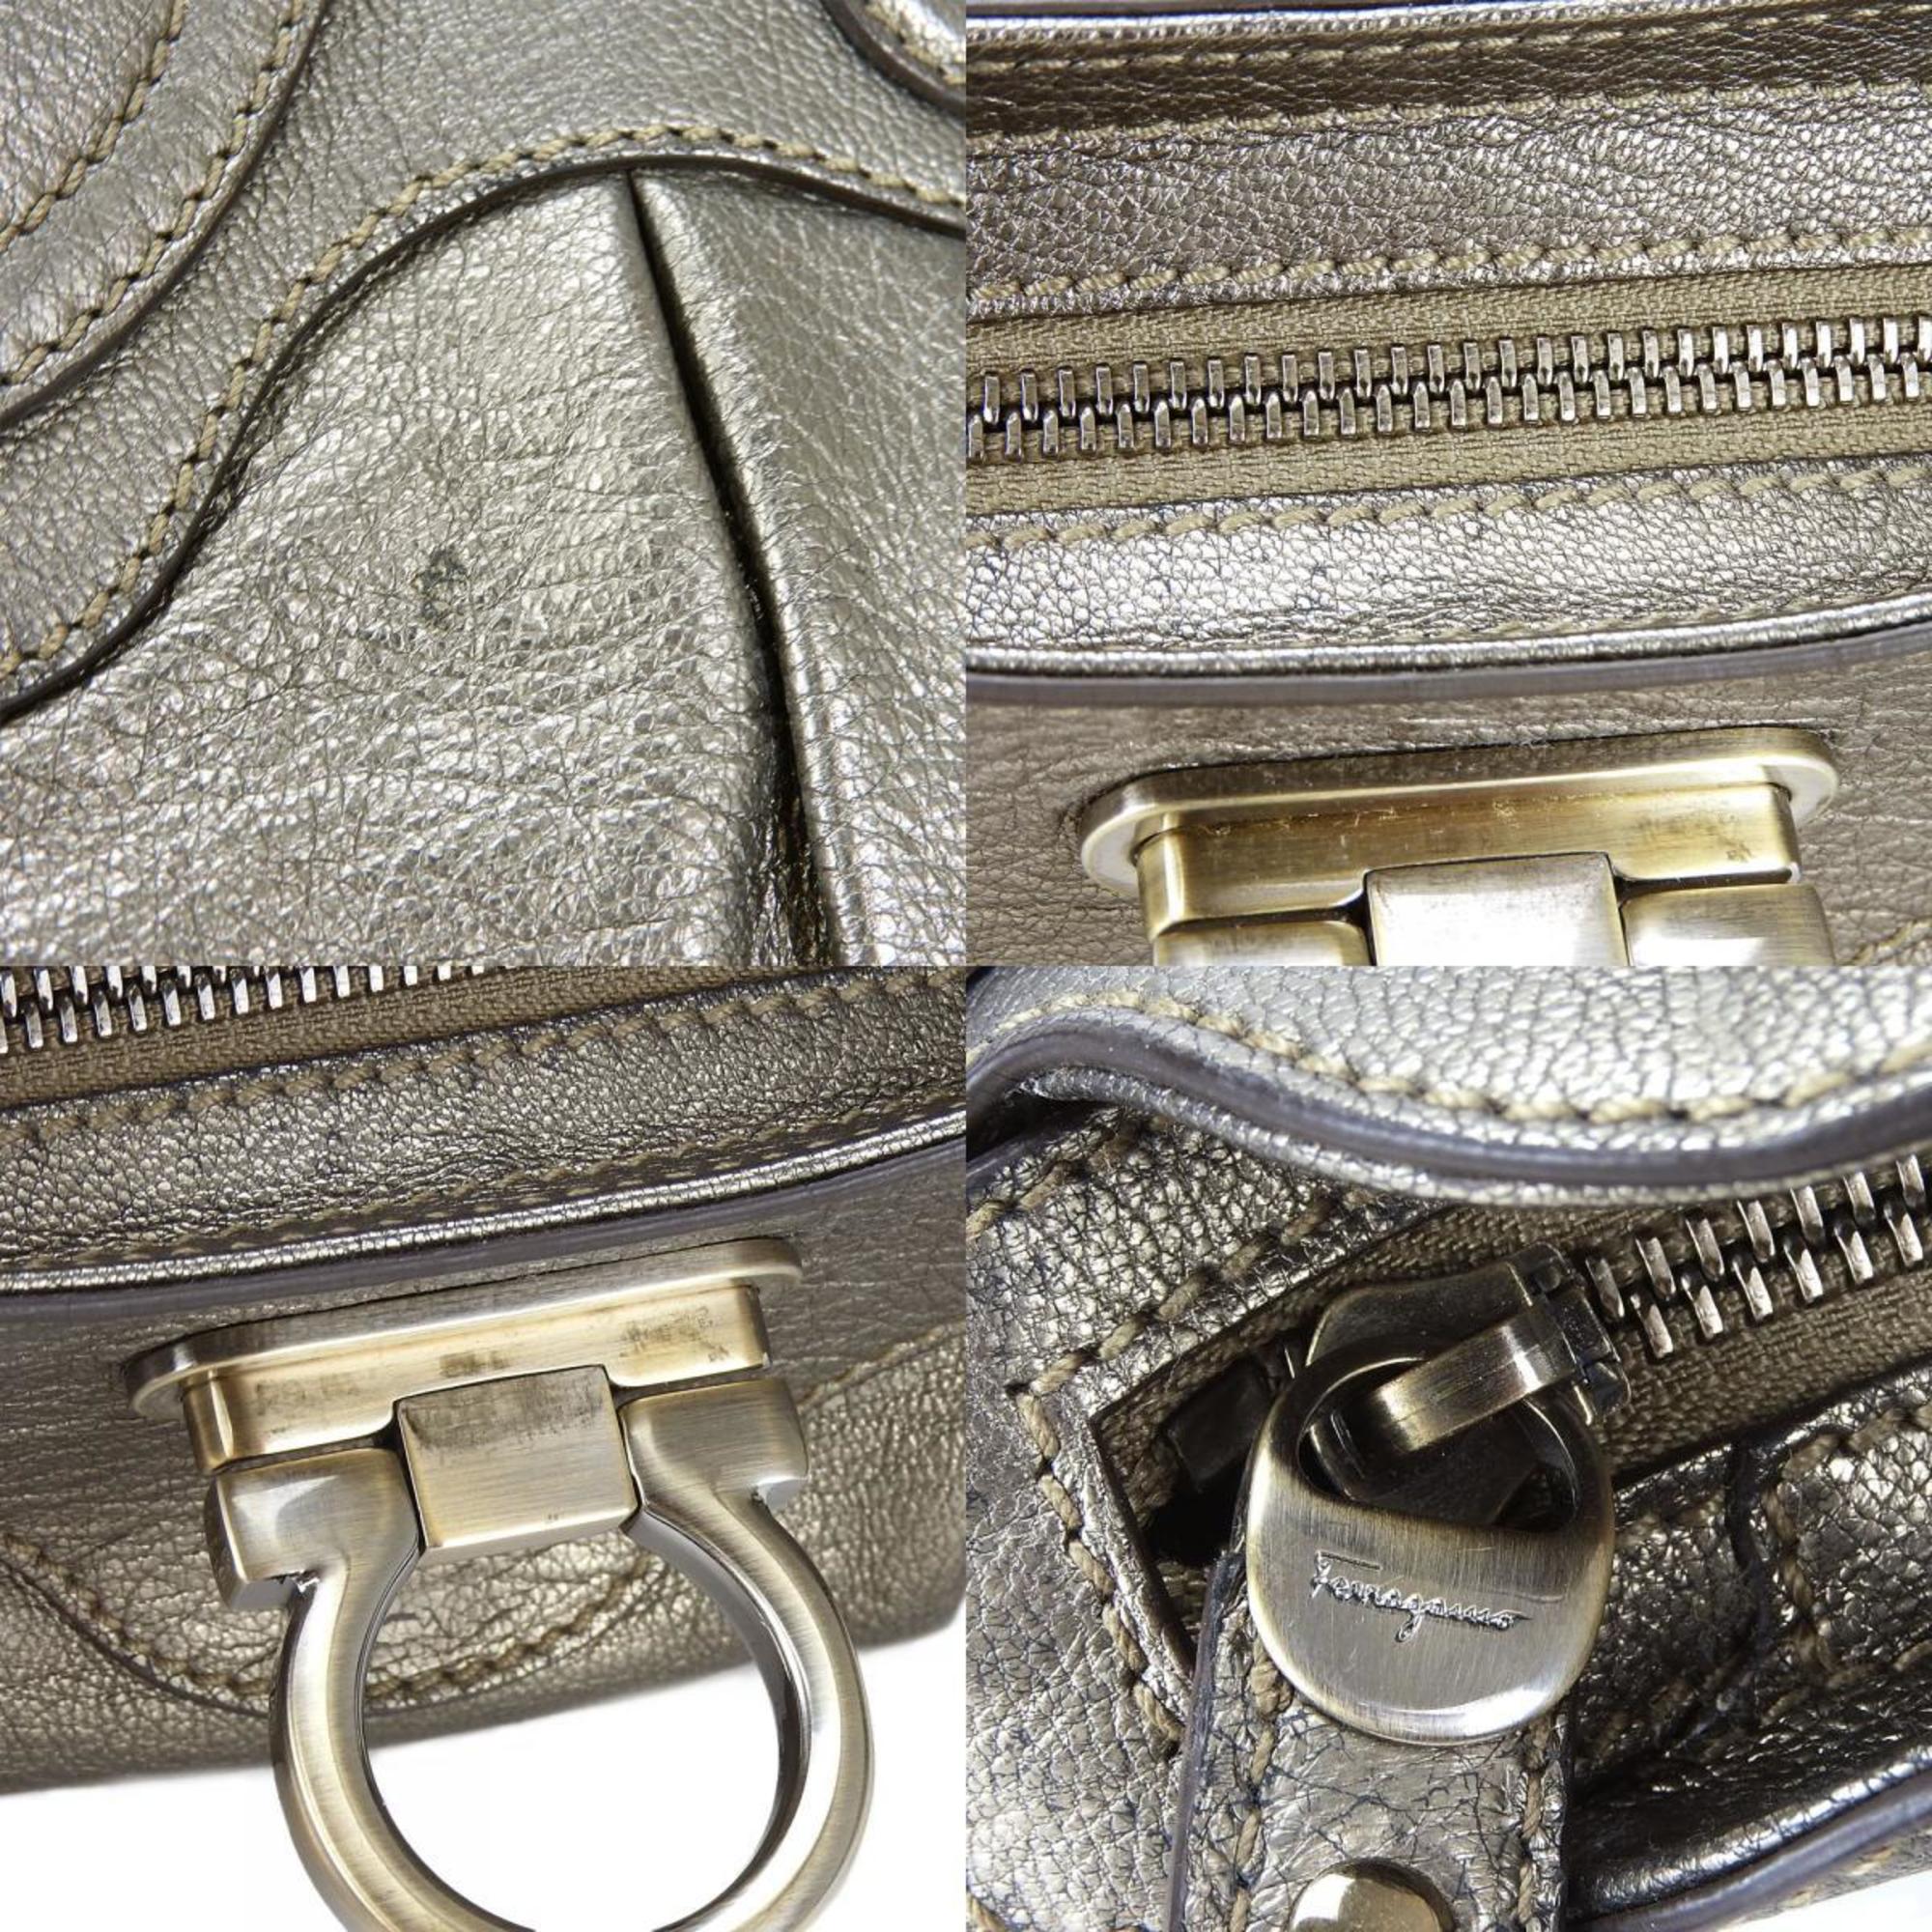 Salvatore Ferragamo Handbag AU-21 6317 Leather Bronze Metallic Gancini Women's